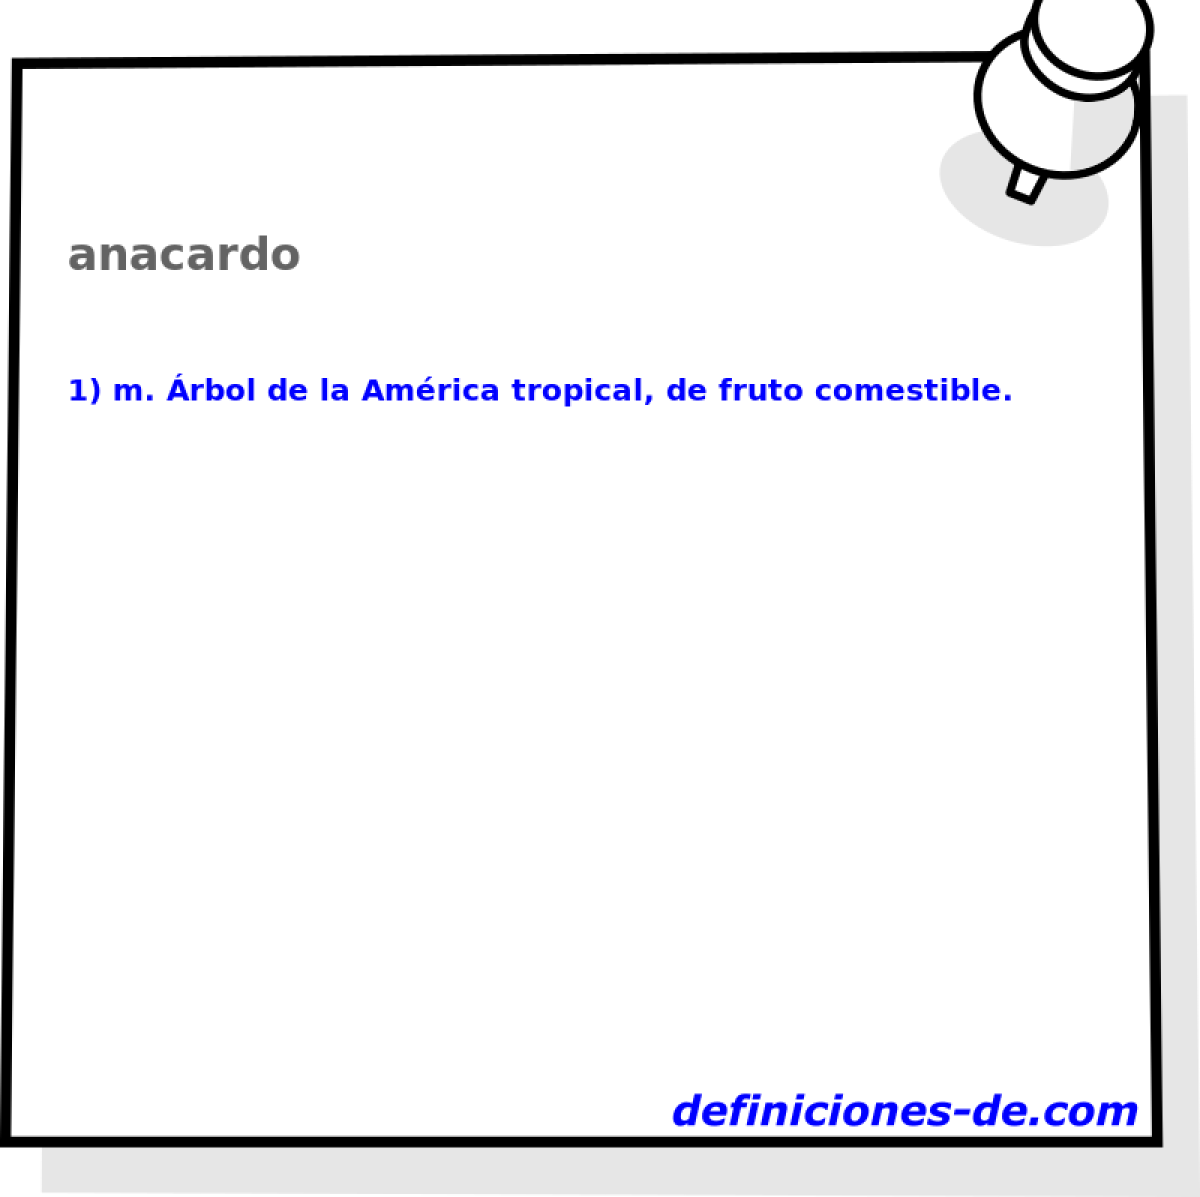 anacardo 